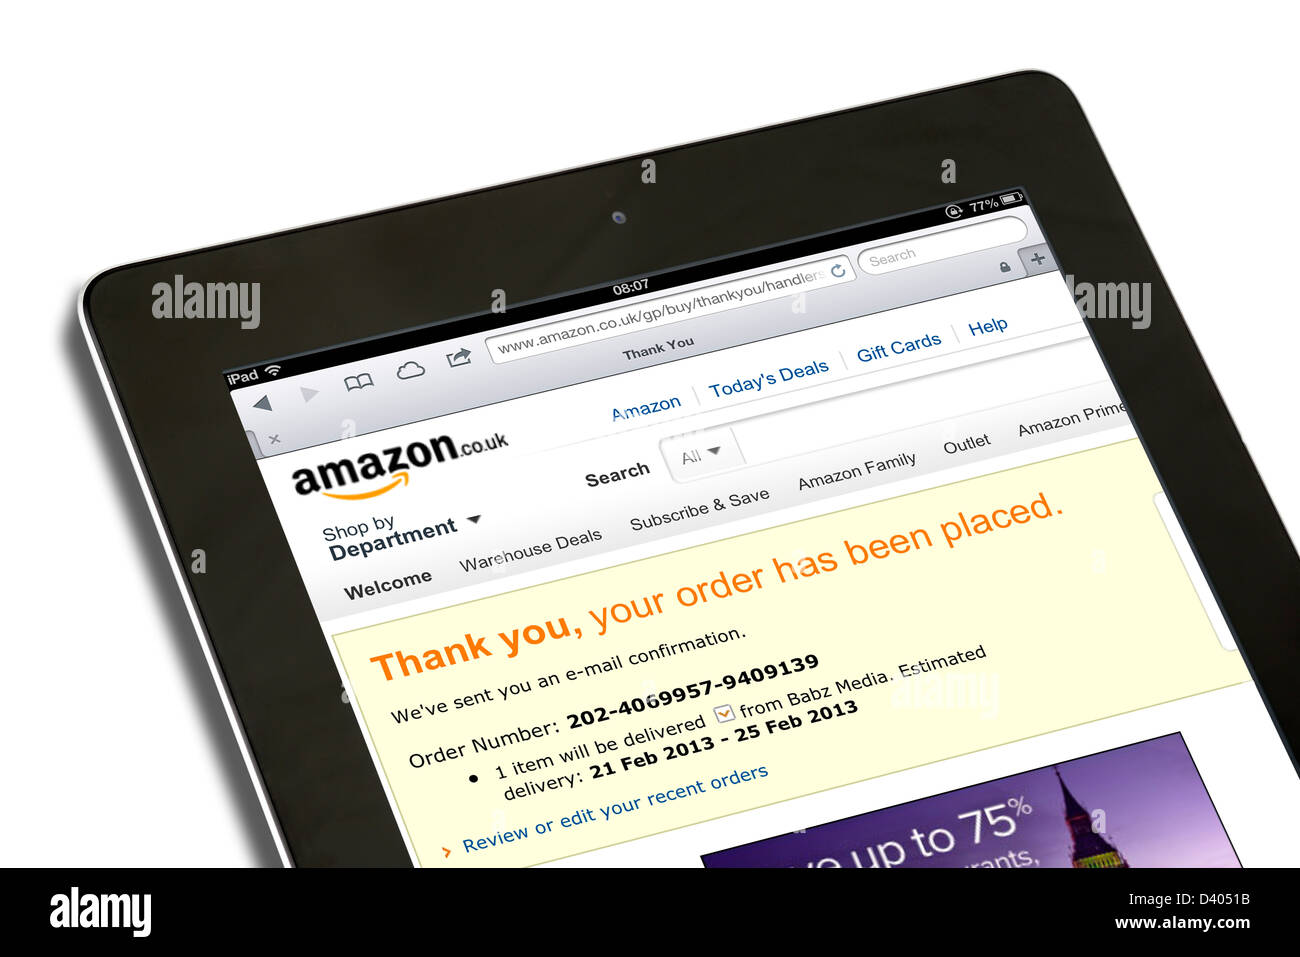 Conferma ordine per shopping online su amazon.co.uk sito web visualizzato su una quarta generazione di Apple computer tablet iPad Foto Stock